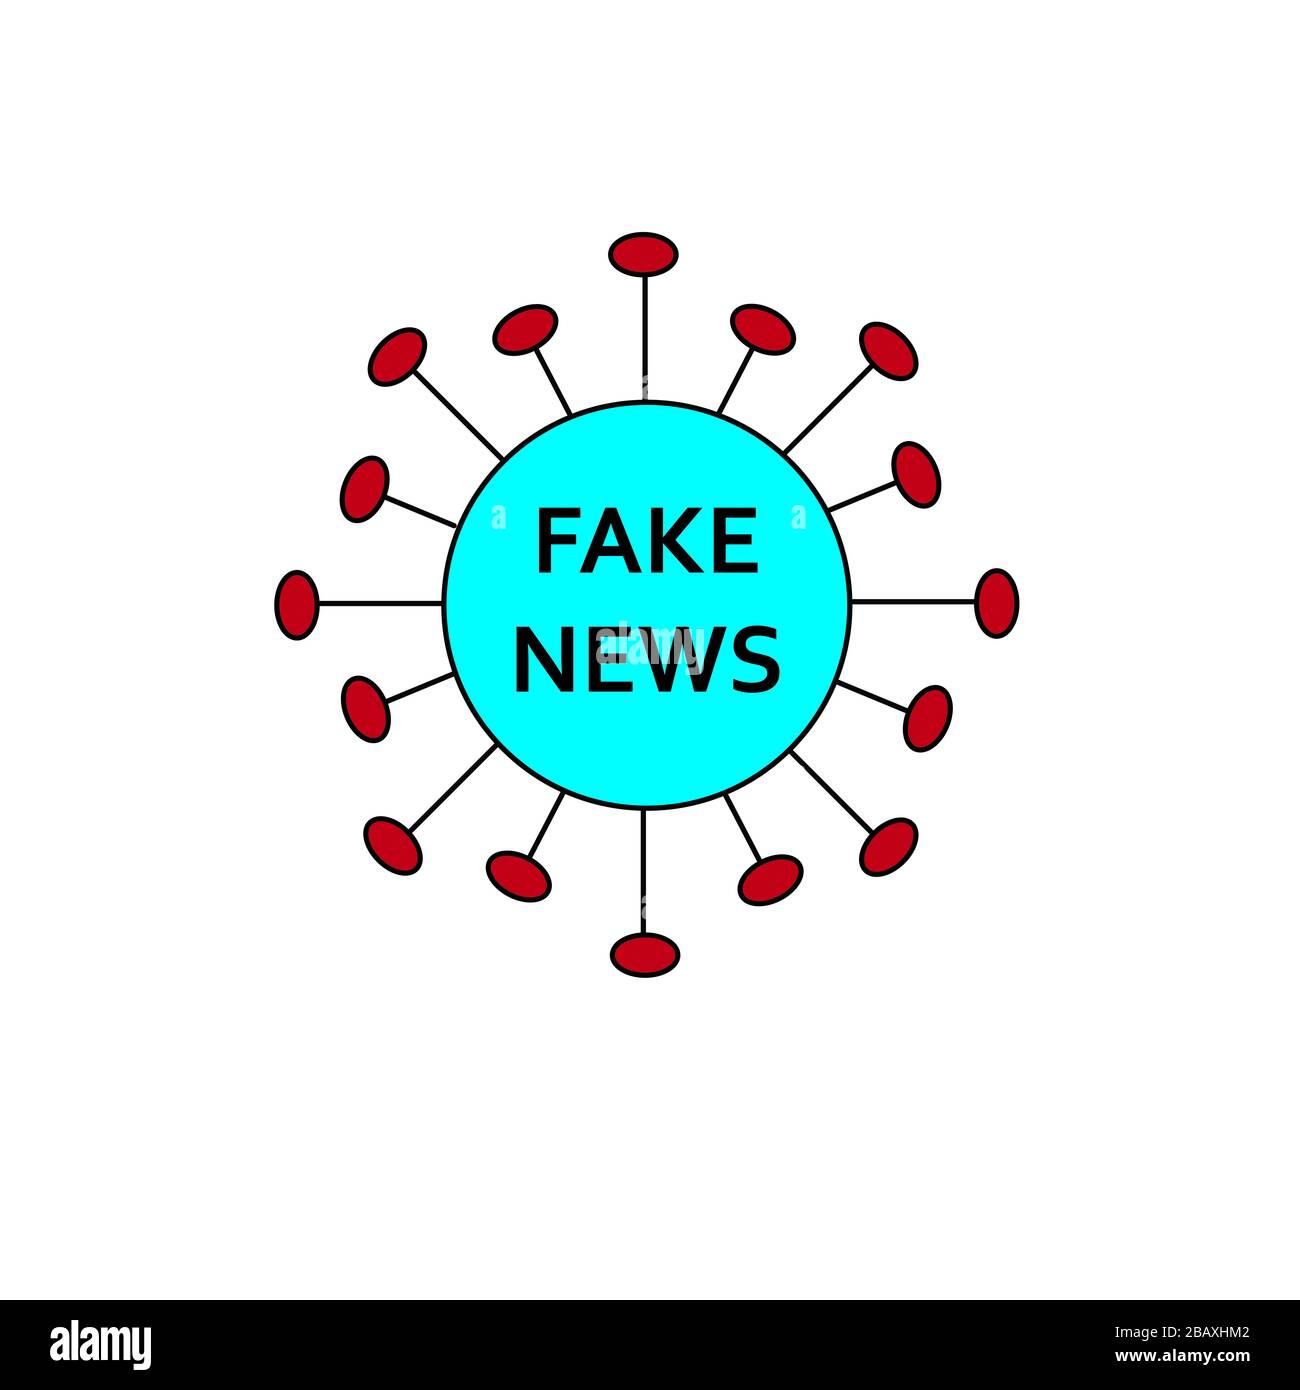 Covid19 Coronavirus Form und Wort FAKE NEWS darüber. Konzept für gefälschte Nachrichten, Berichte, Statistiken, gefälschte Informationen während der globalen Pandemie und Qua Stockfoto